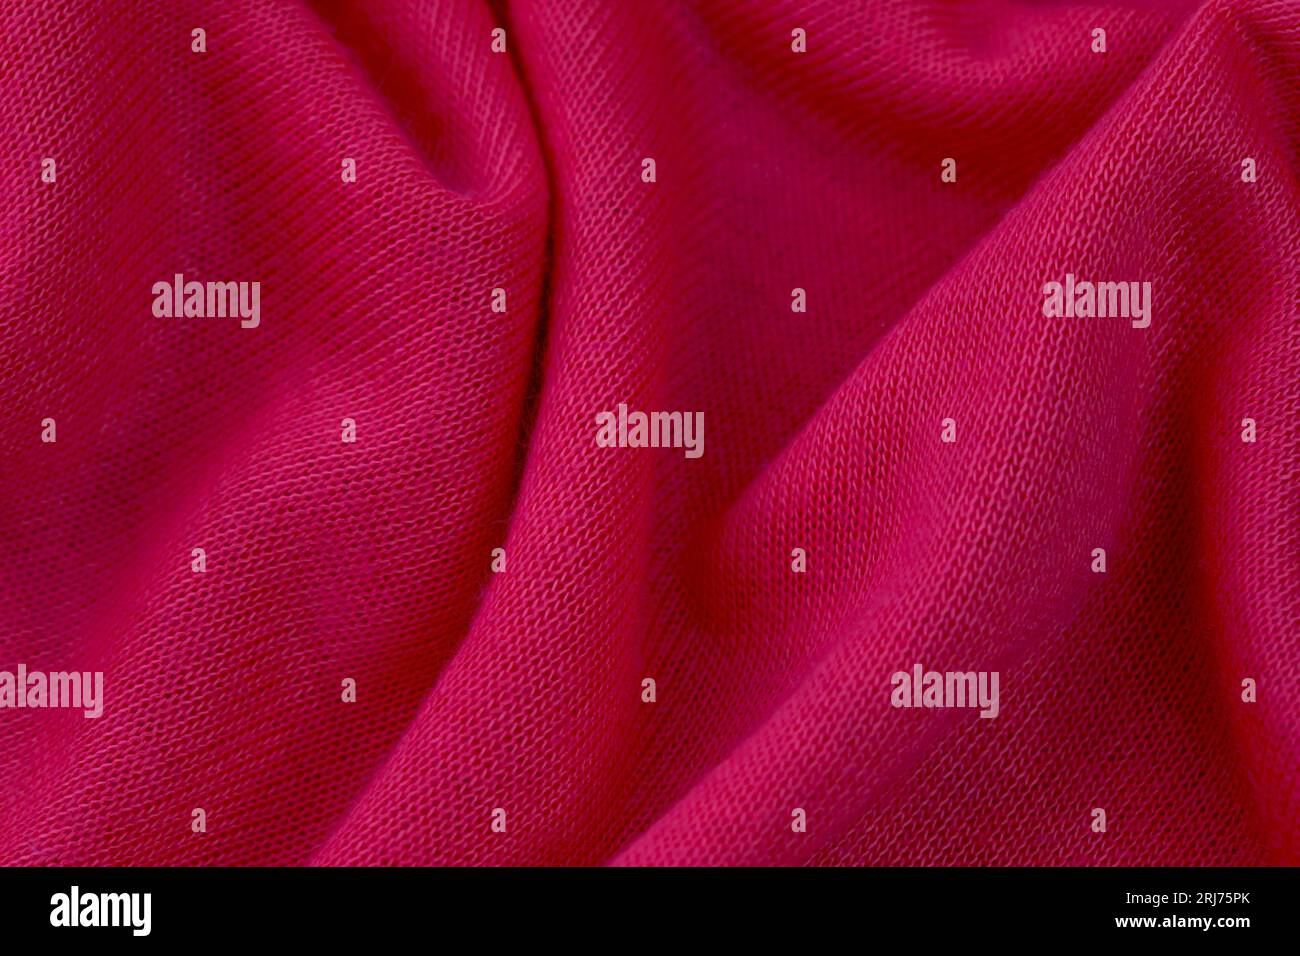 Ein Nahaufnahme-Bild mit einer weichen, pinken Stoffstruktur und subtilen Details des Webens sichtbar Stockfoto